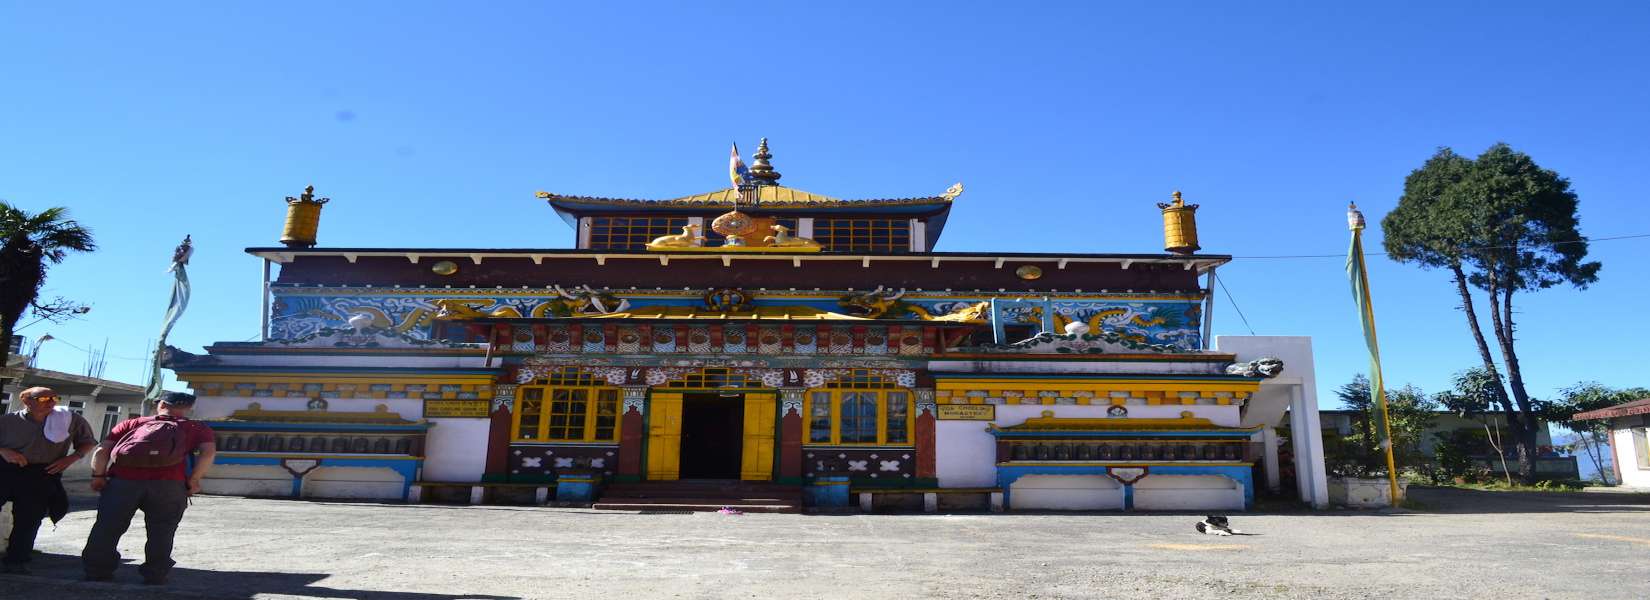 Yiga Choeling (Old Ghum) Monastery in Darjeeling